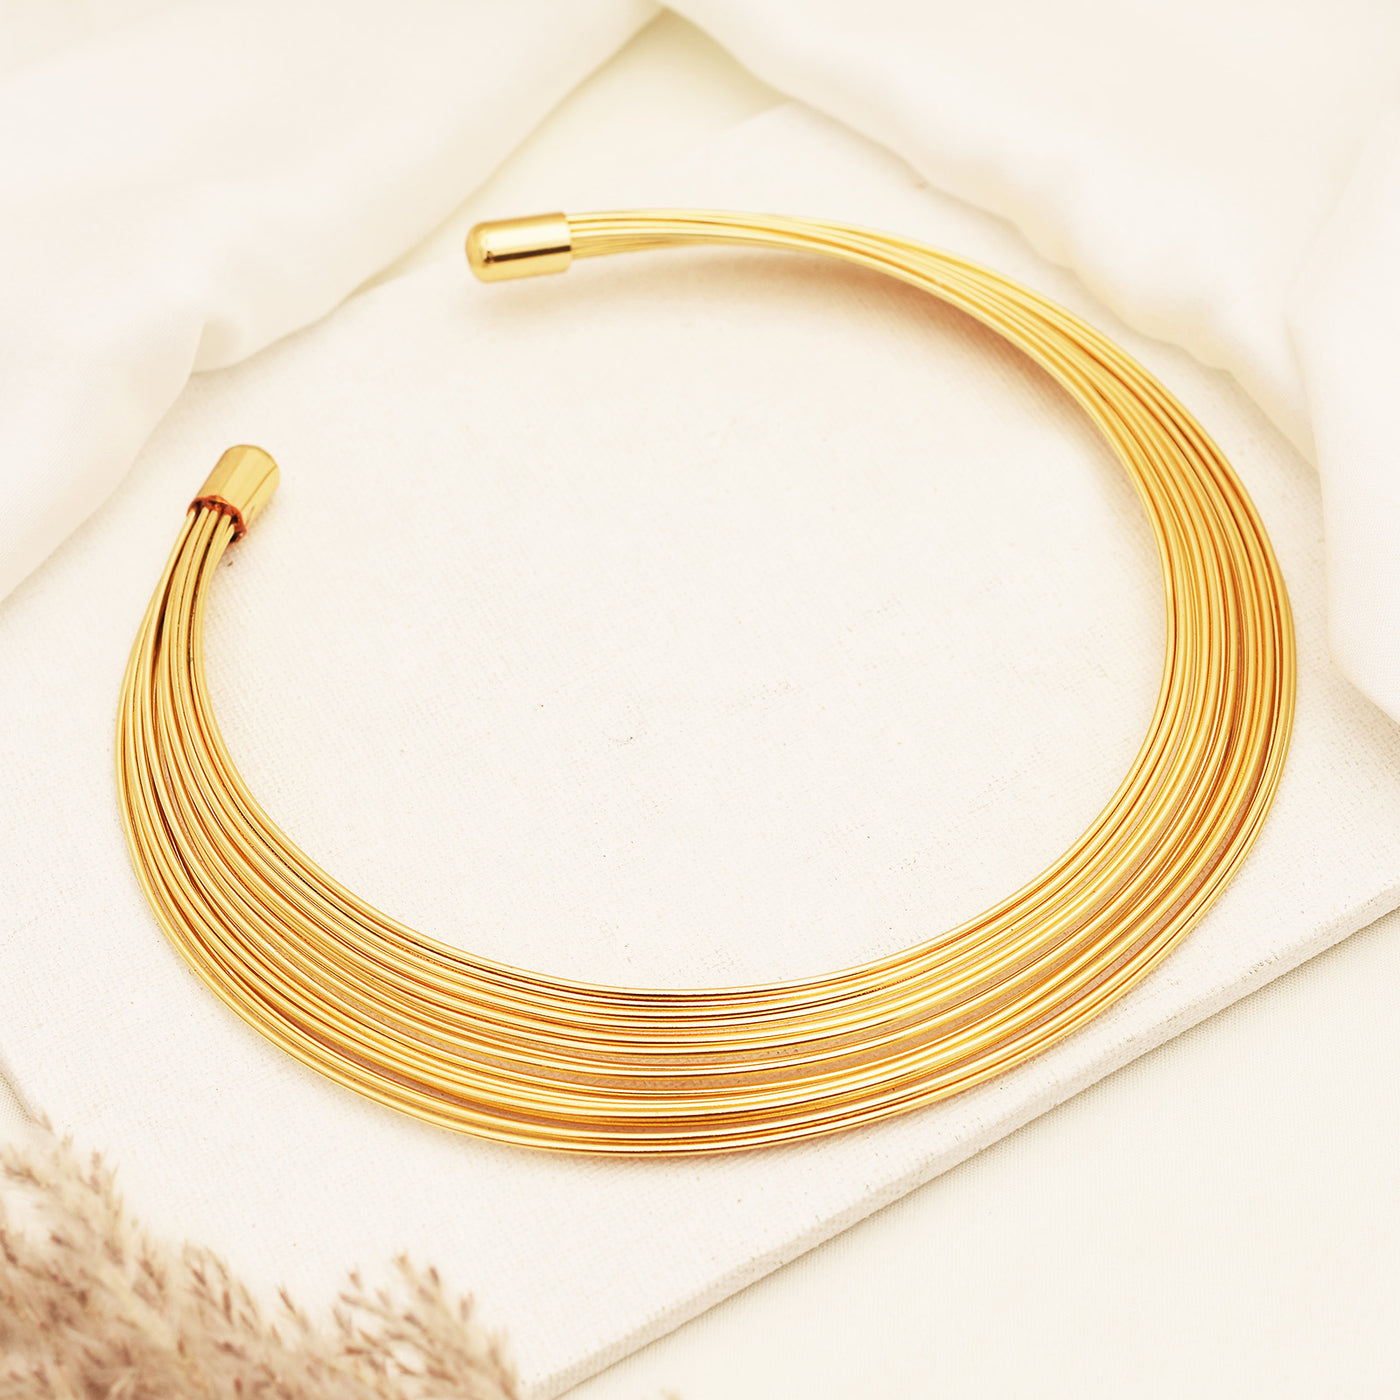 Celeste Golden Wired Hansli Necklace Set